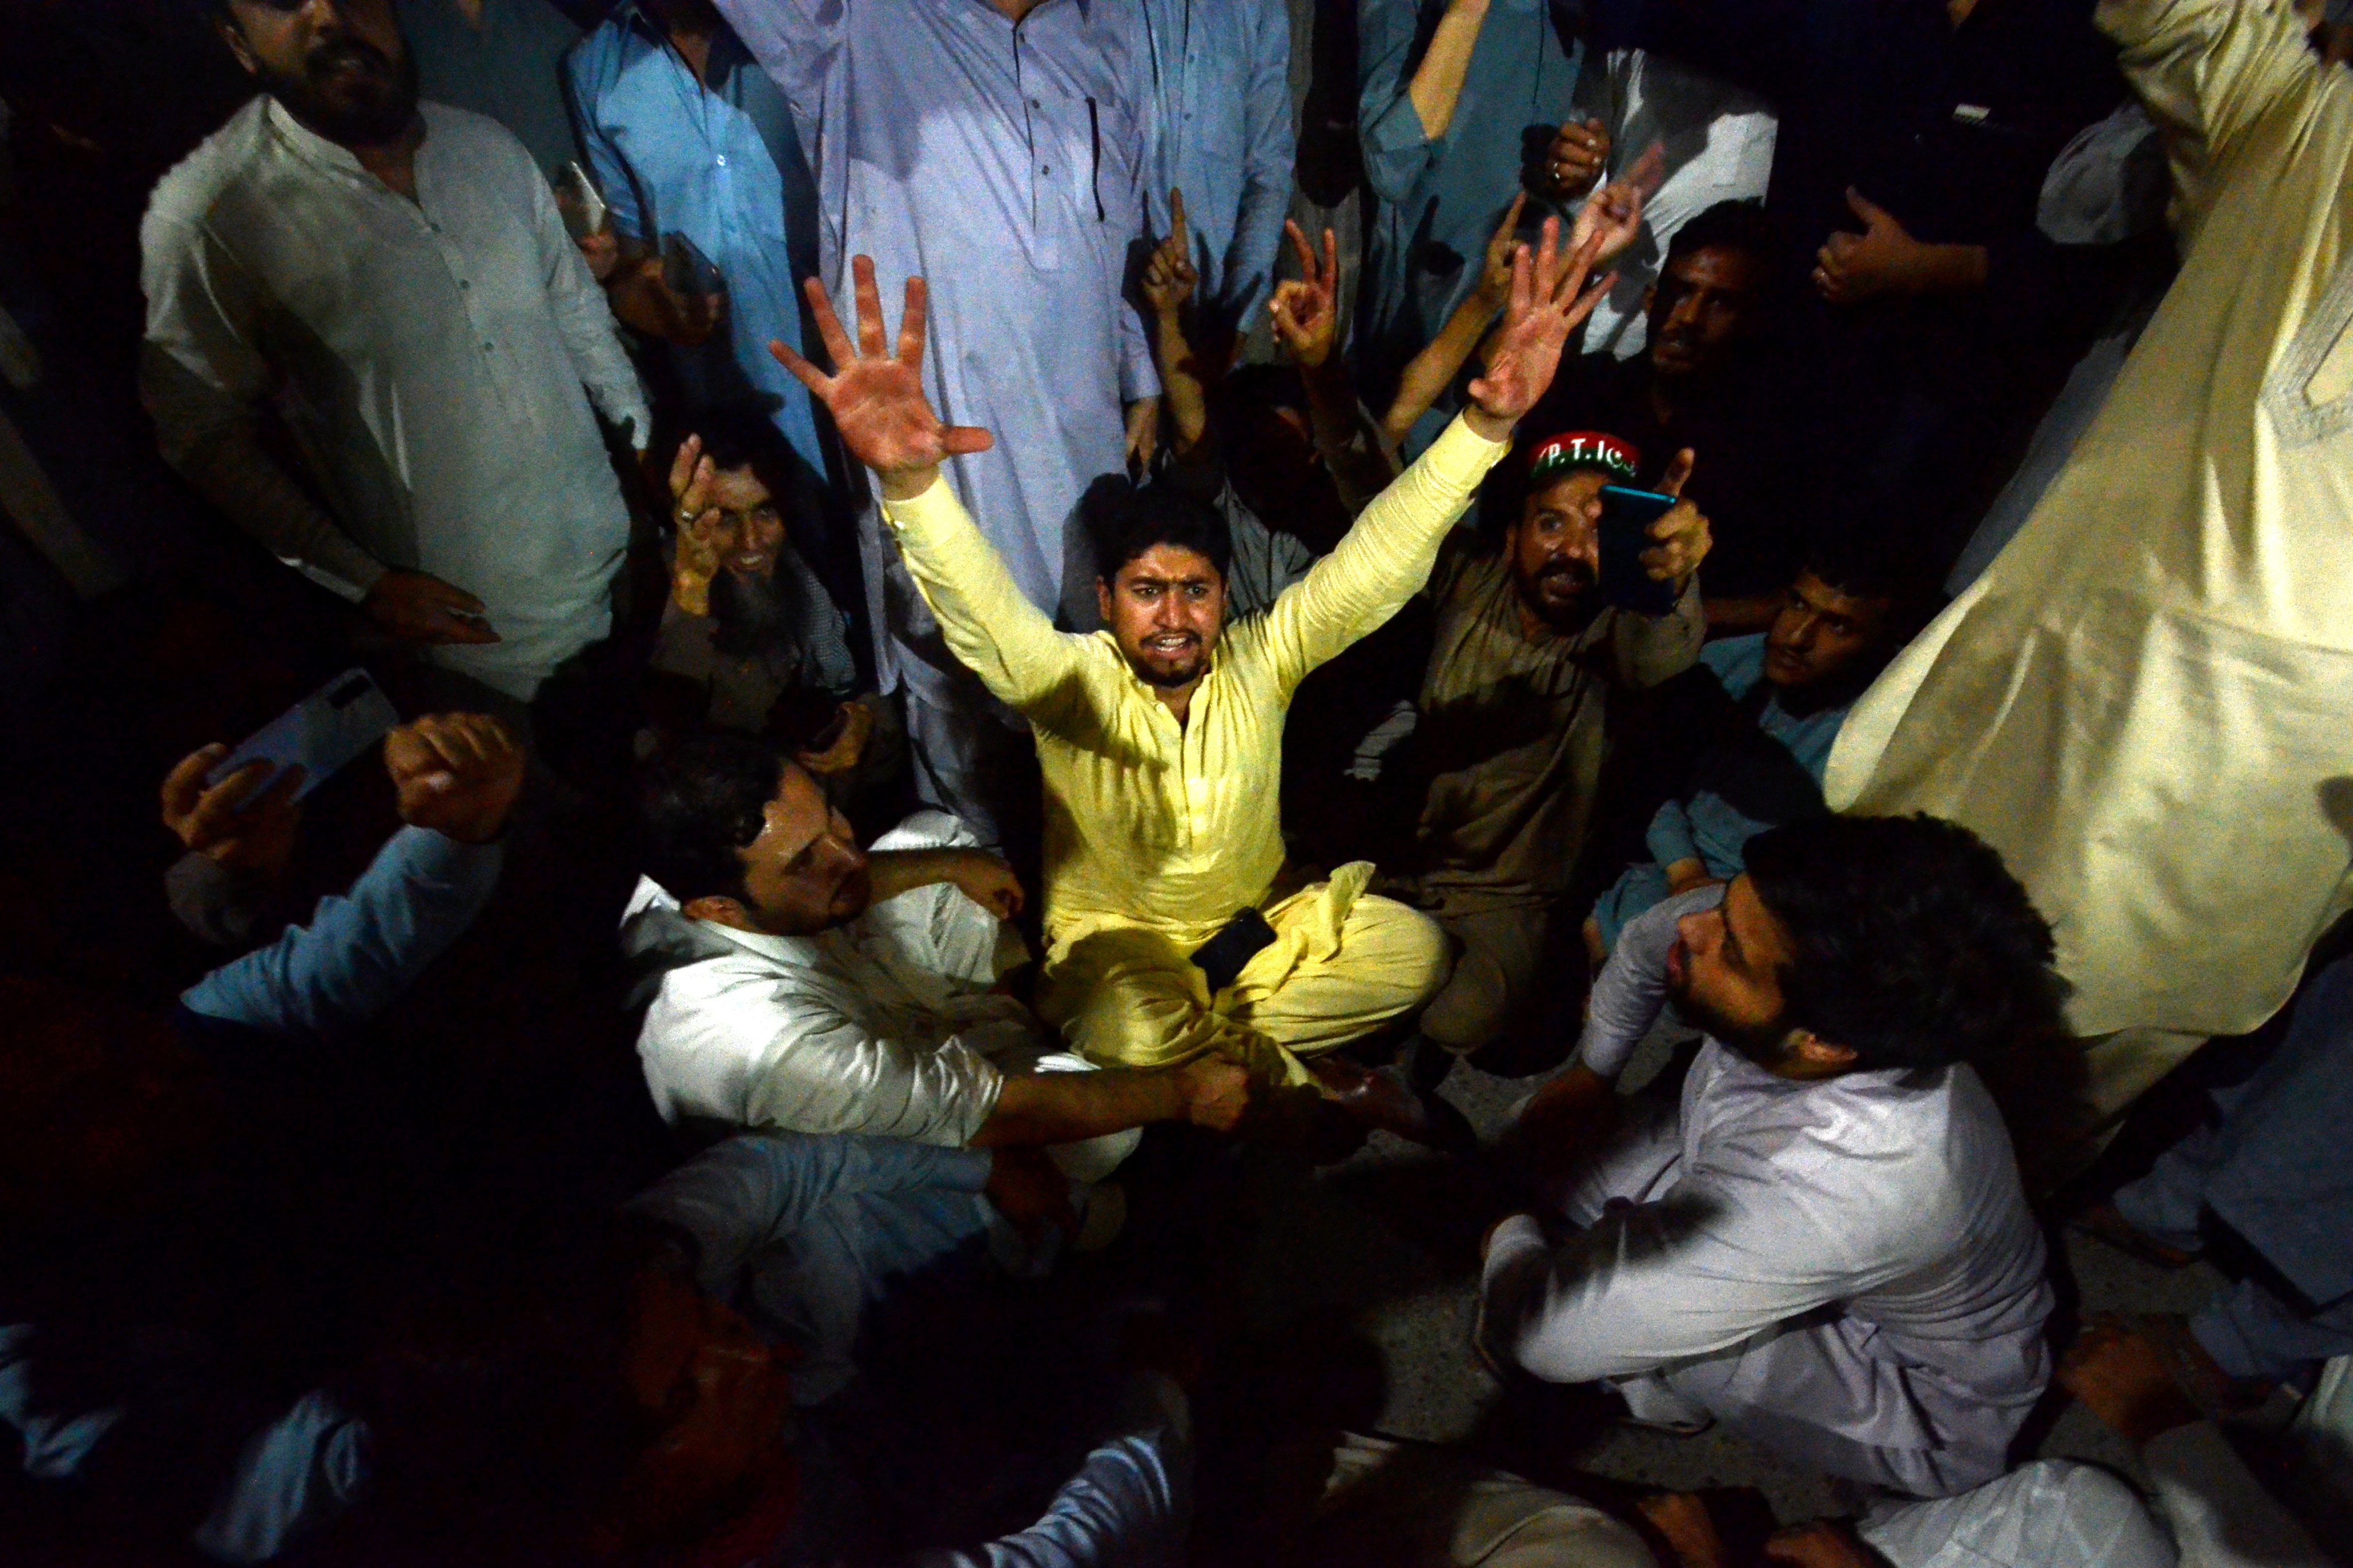 Protests erupt after assassination attempt on former Pakistani premier